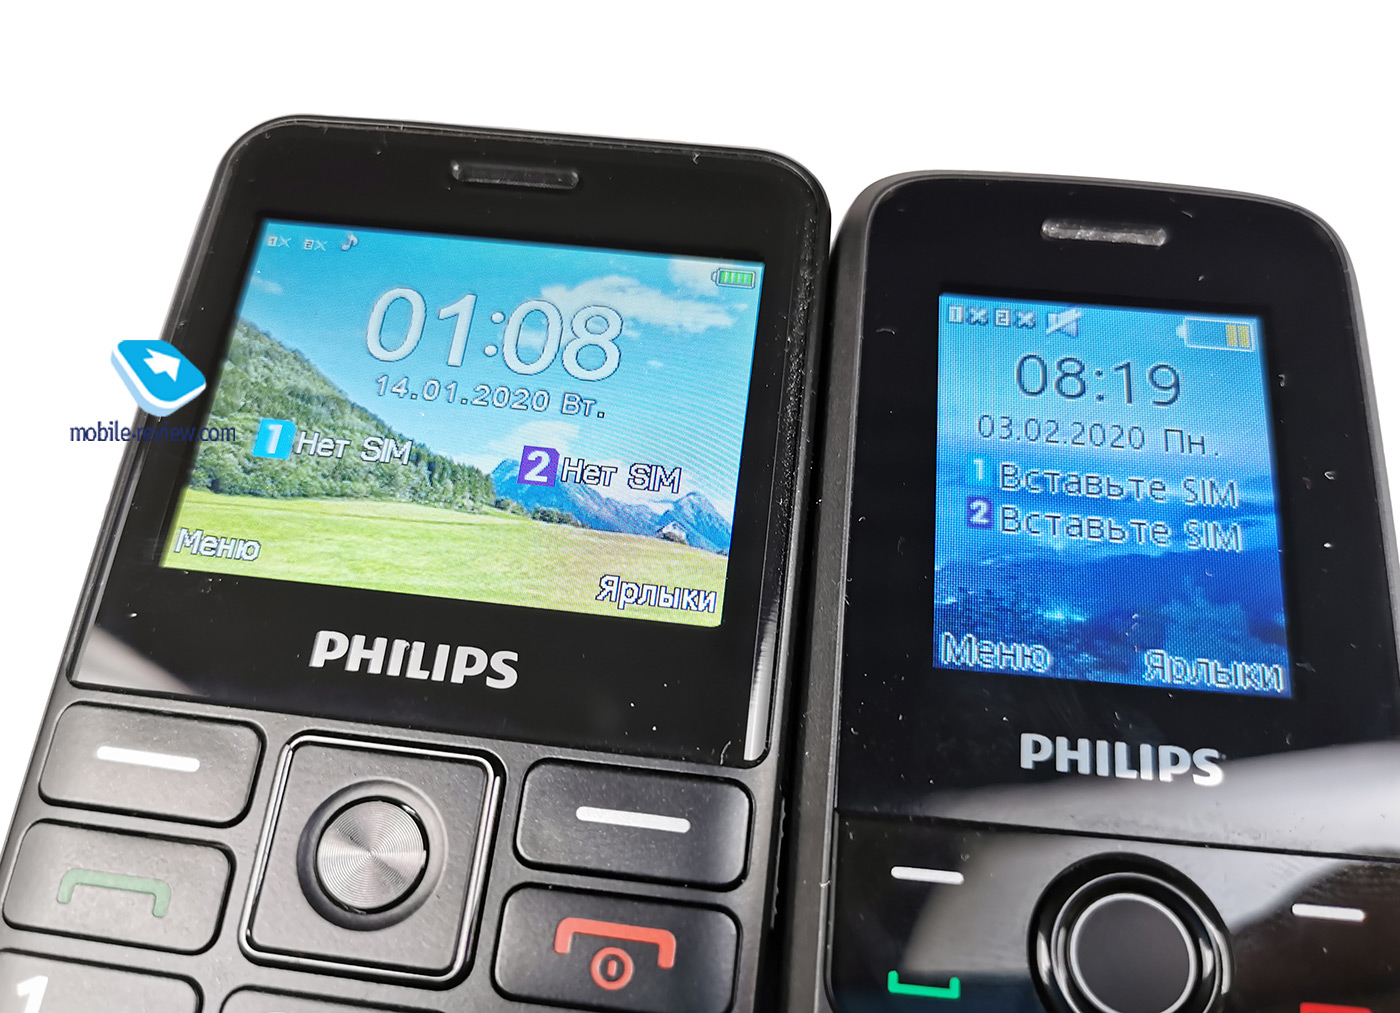 Филипс е 207. Филипс Xenium е207. Philips Xenium e207. Philips Xenium e117. Филипс кнопочный е207.